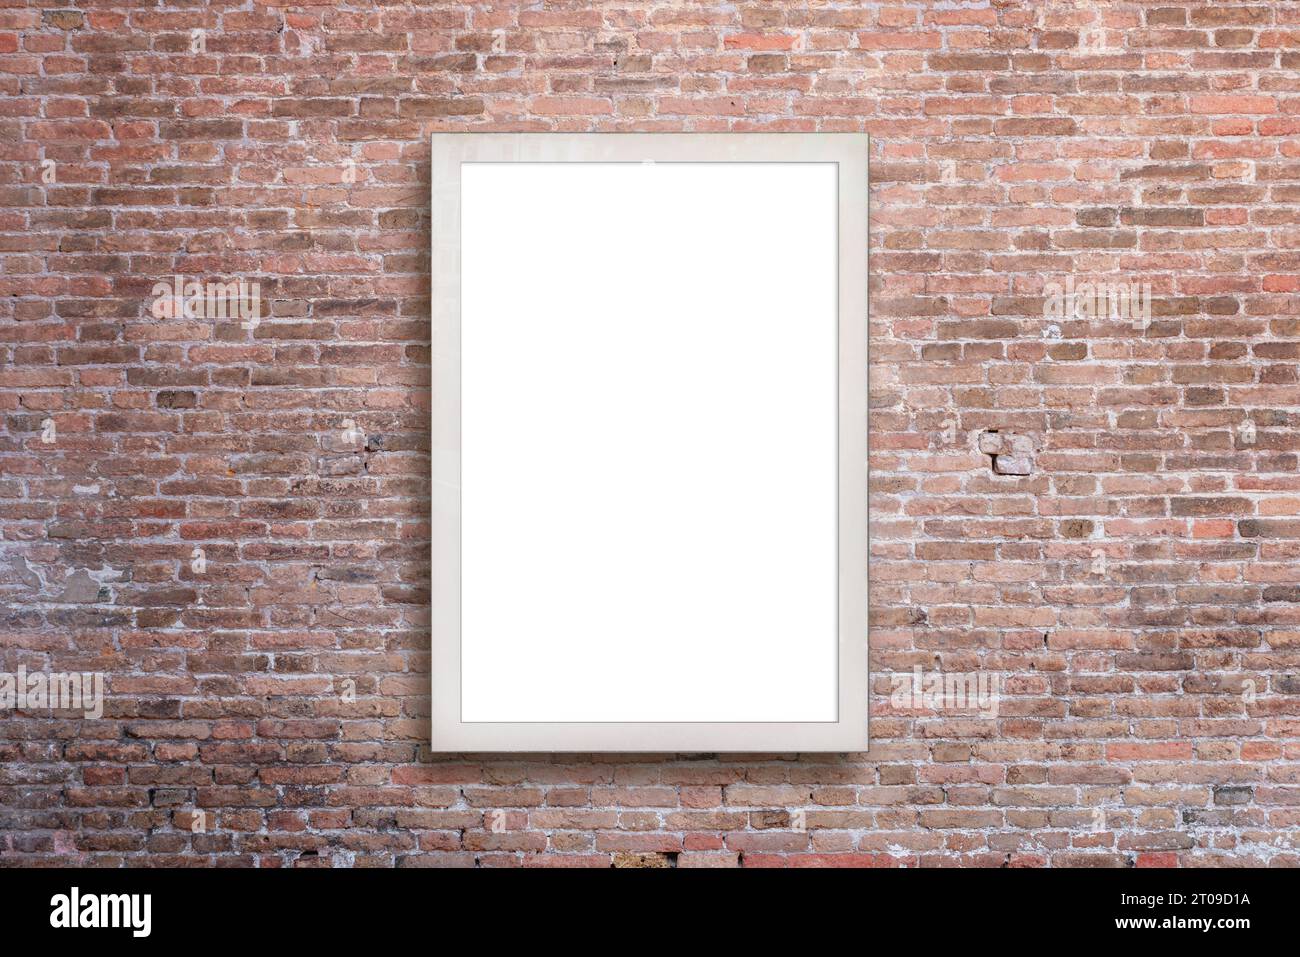 Vertikale Plakatwand an einer Ziegelwand, die eine isolierte Oberfläche bietet, die perfekt für die Präsentation von Mockups und die Werbung für Designs ist Stockfoto